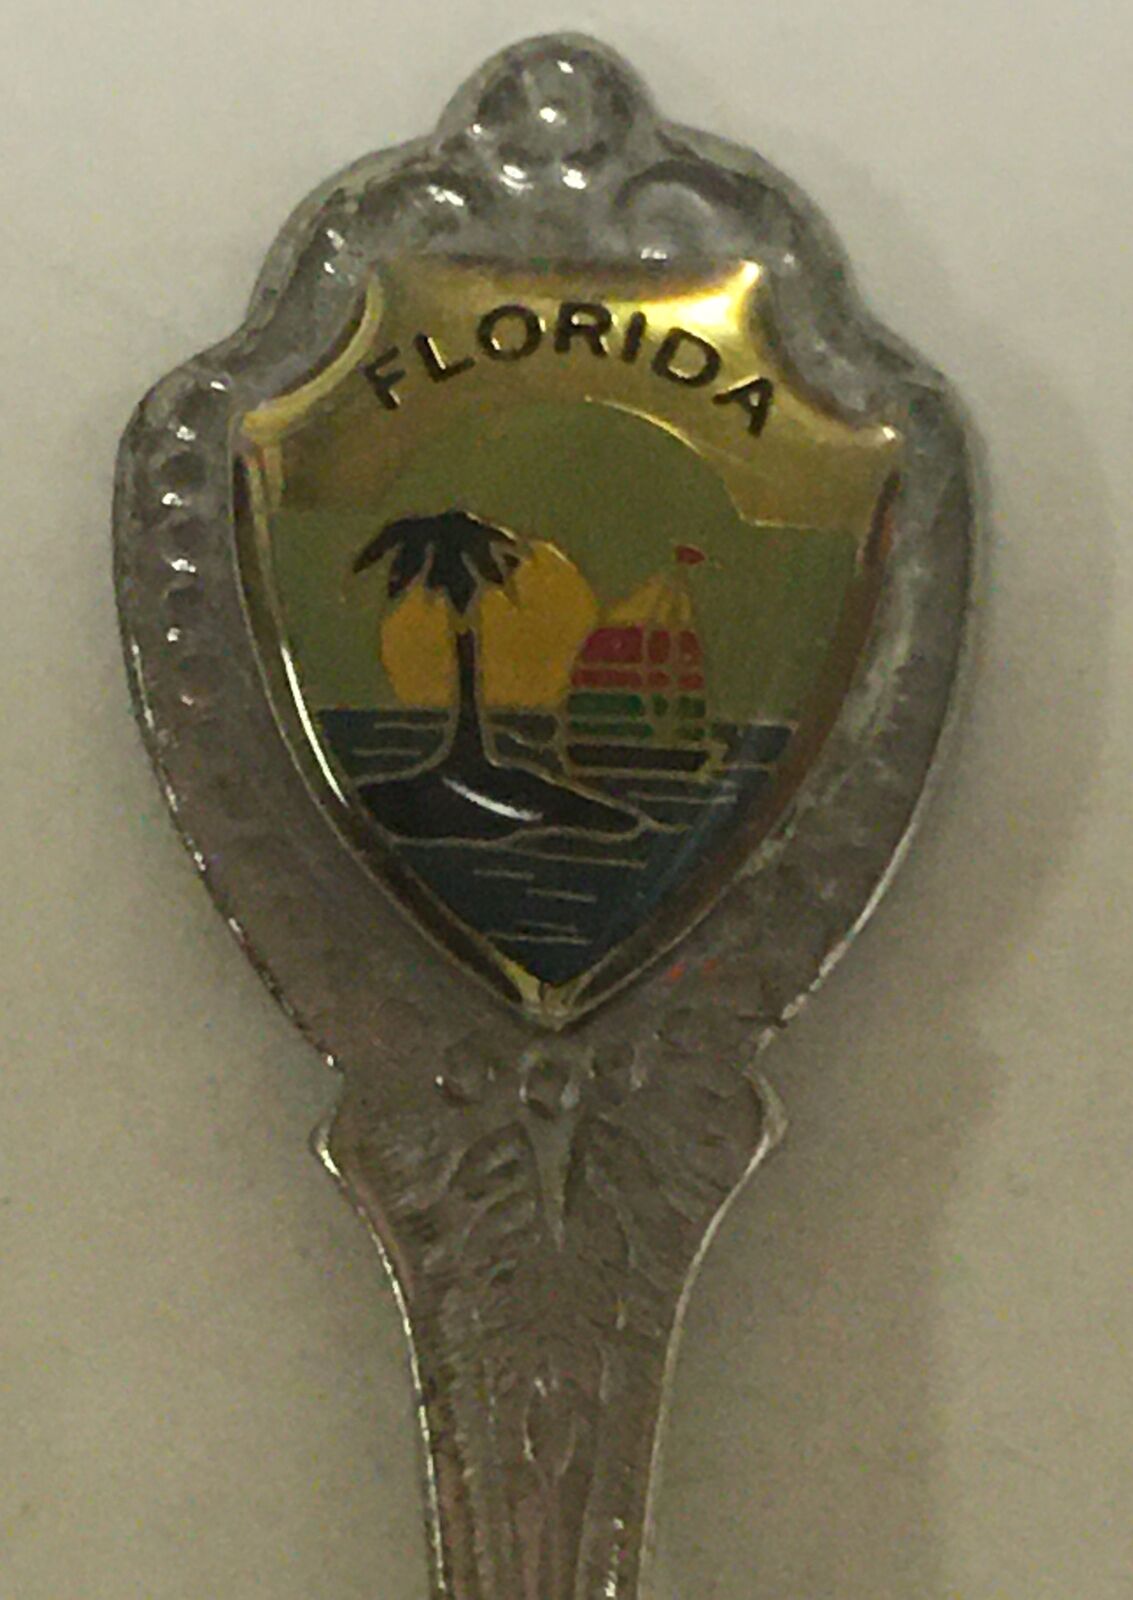 Florida Vintage Souvenir Spoon Collectible